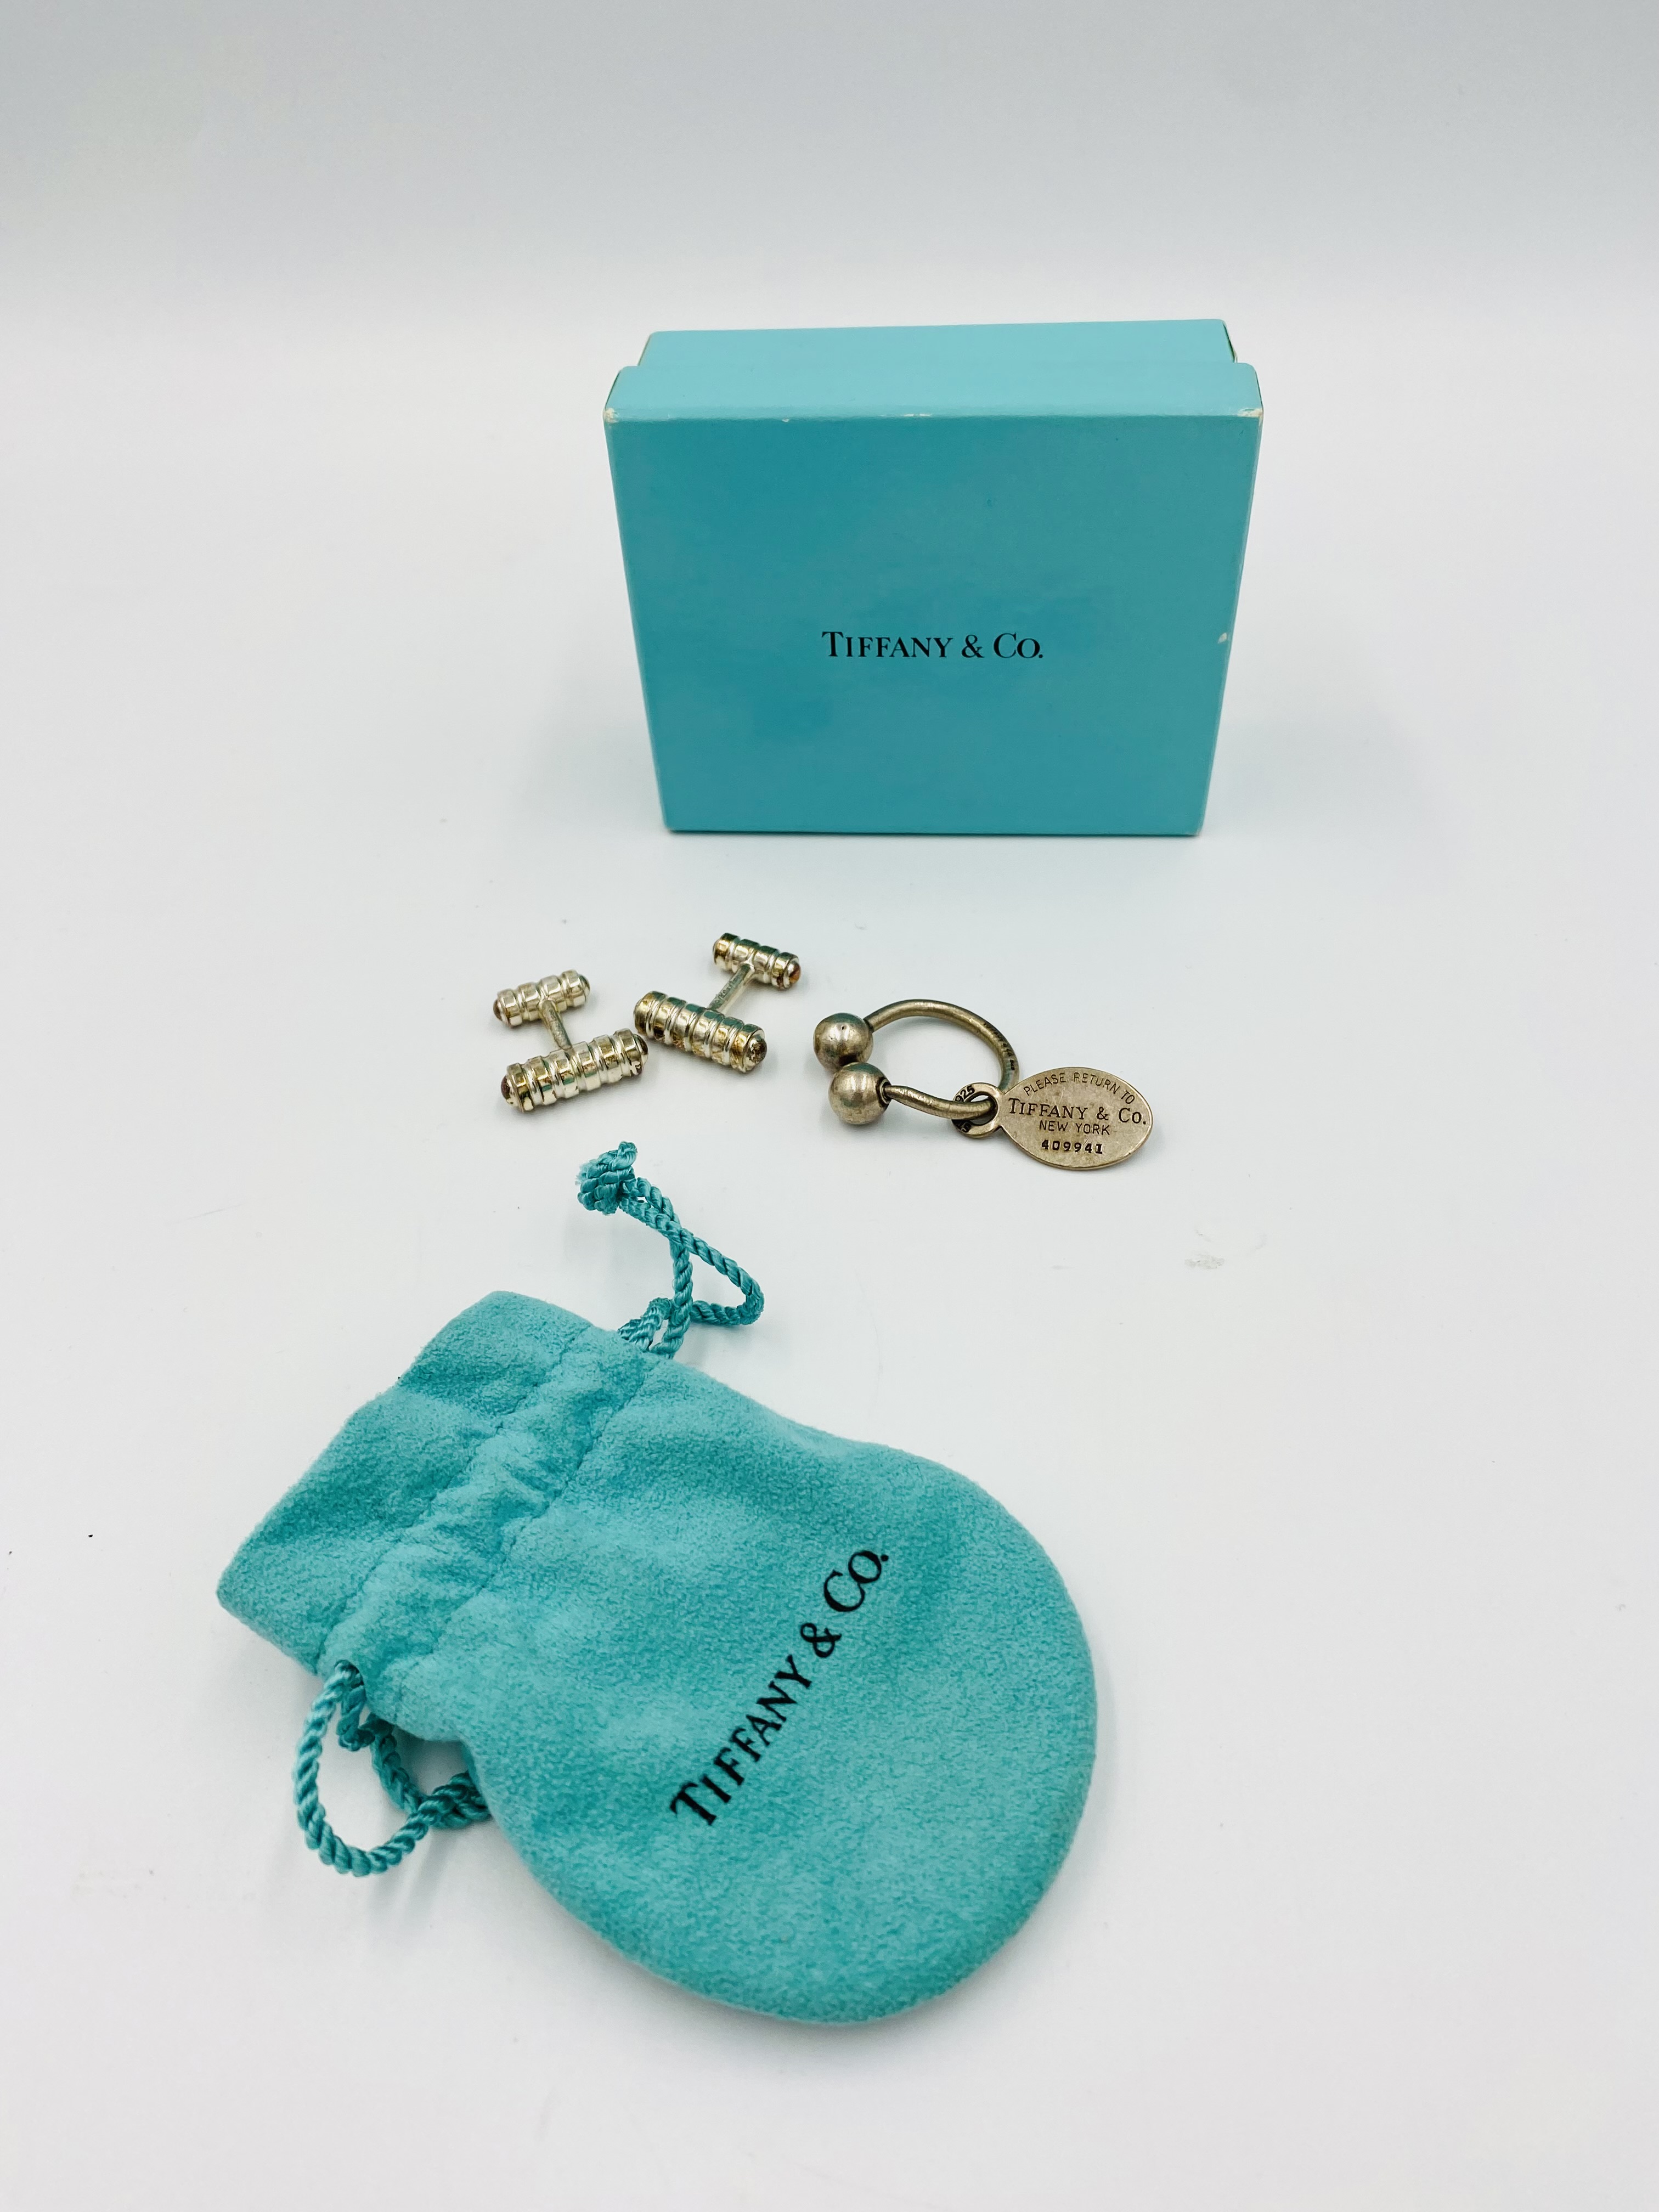 Pir of silver Tiffany cufflinks and a silver Tiffany bullring key fob. - Image 2 of 2